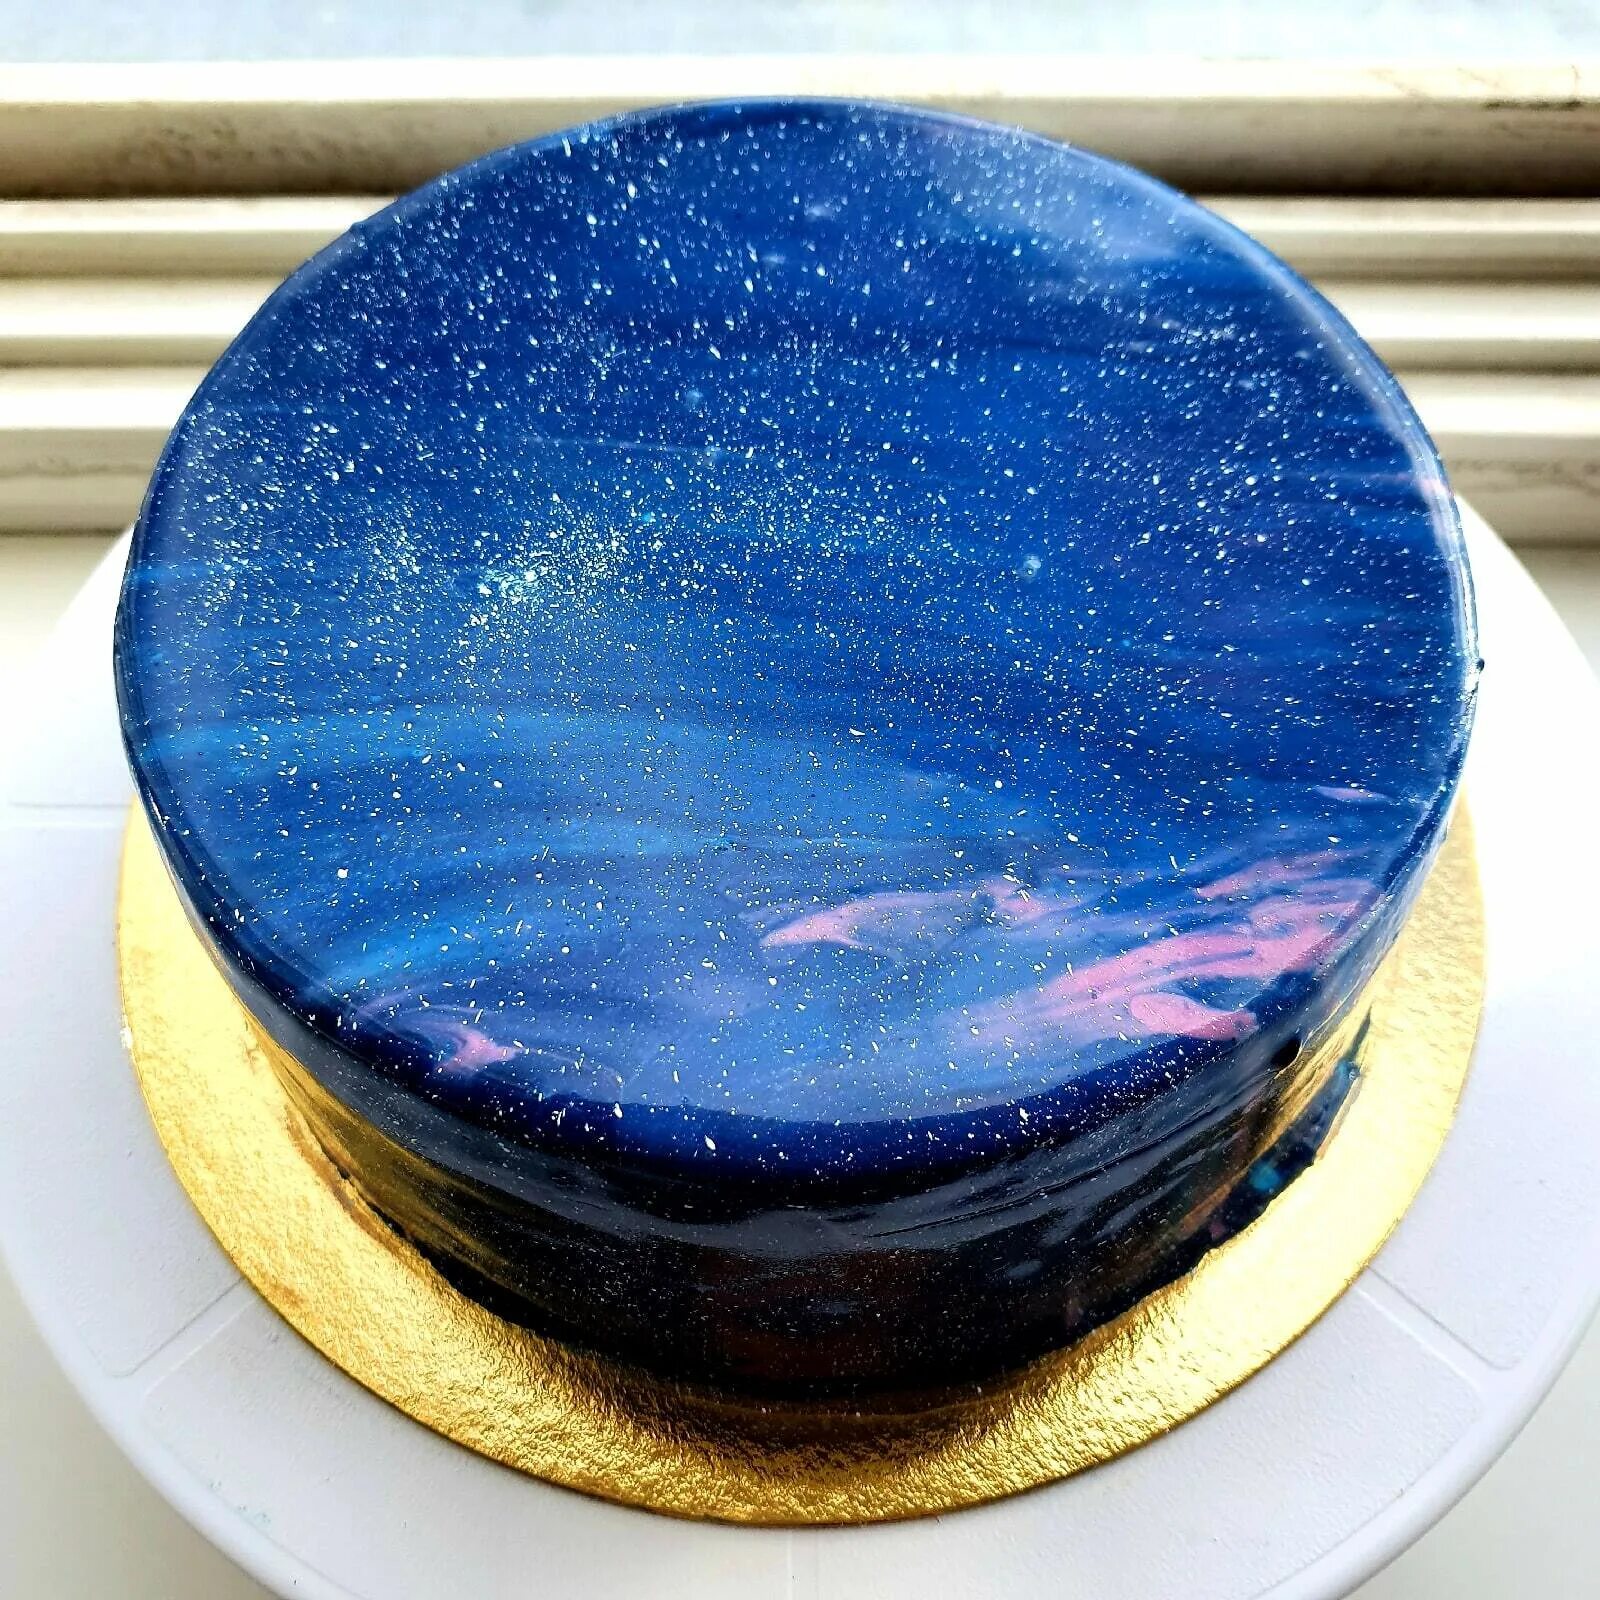 Муссовый зеркальный торт космос. Муссовый торт с зеркальной глазурью. Муссовый космос зеркальная глазурь. Зеркальная глазурь гляссаж. Воздушная глазурь